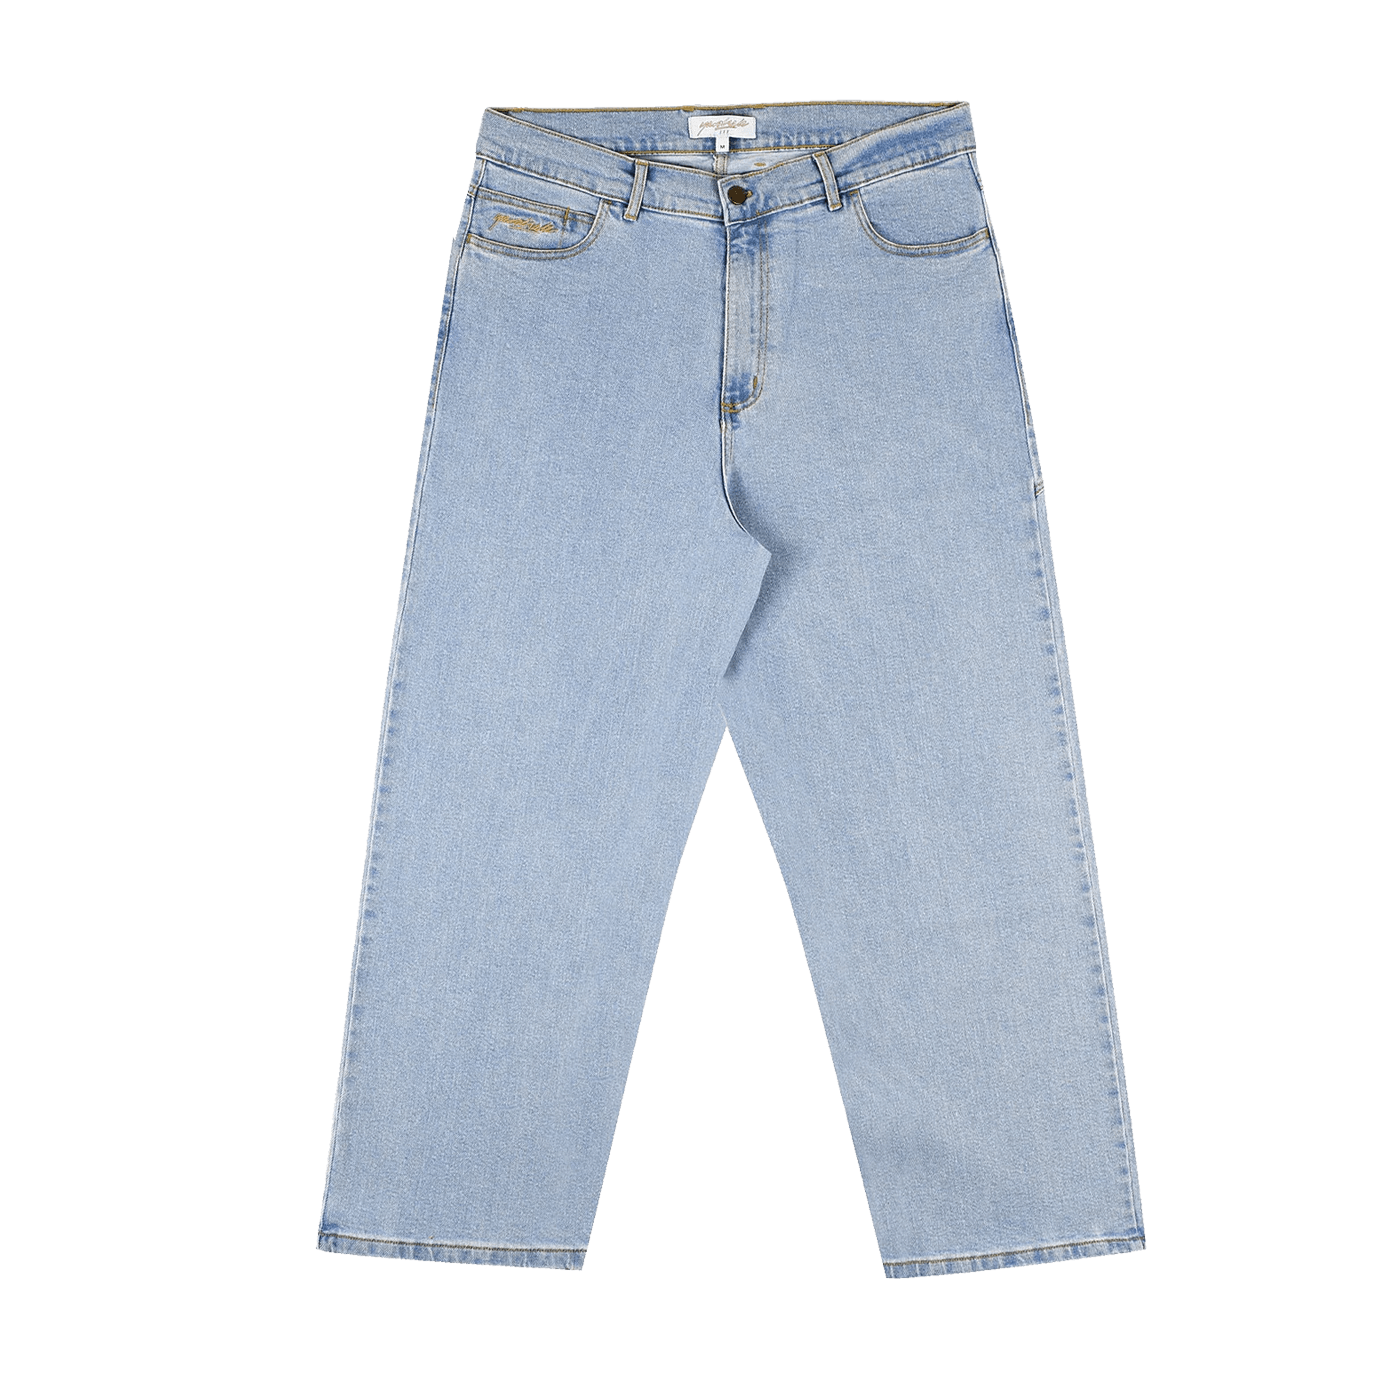 Yardsale Phantasy Jeans Light Denim